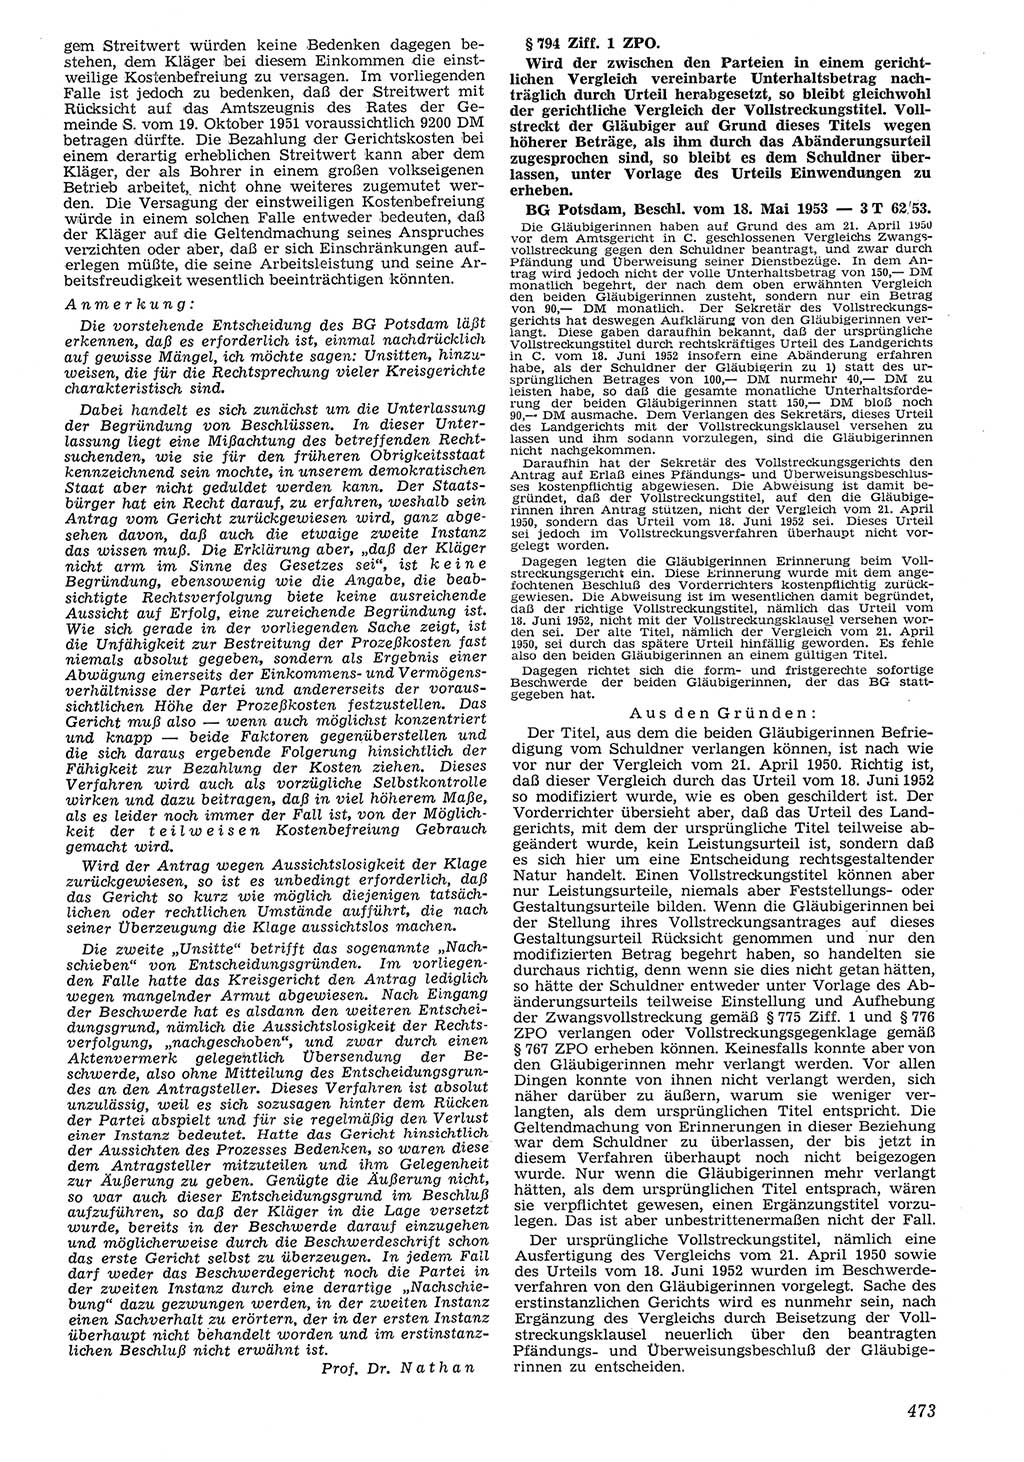 Neue Justiz (NJ), Zeitschrift für Recht und Rechtswissenschaft [Deutsche Demokratische Republik (DDR)], 7. Jahrgang 1953, Seite 473 (NJ DDR 1953, S. 473)